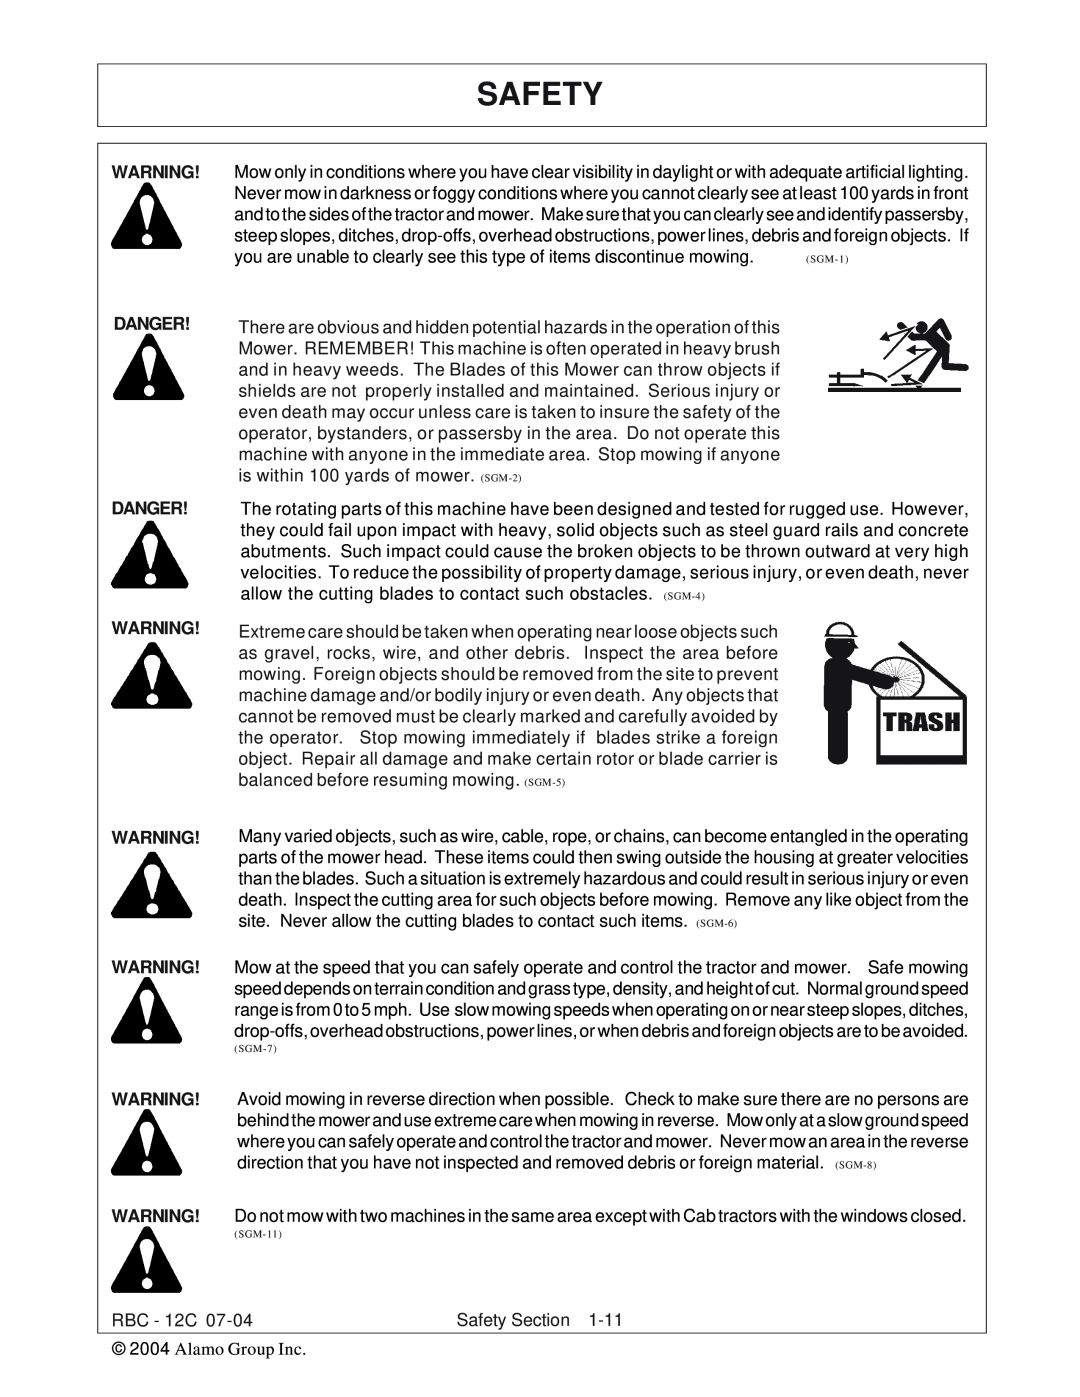 Tiger Products Co., Ltd RBF-12C manual Safety, Danger Danger 